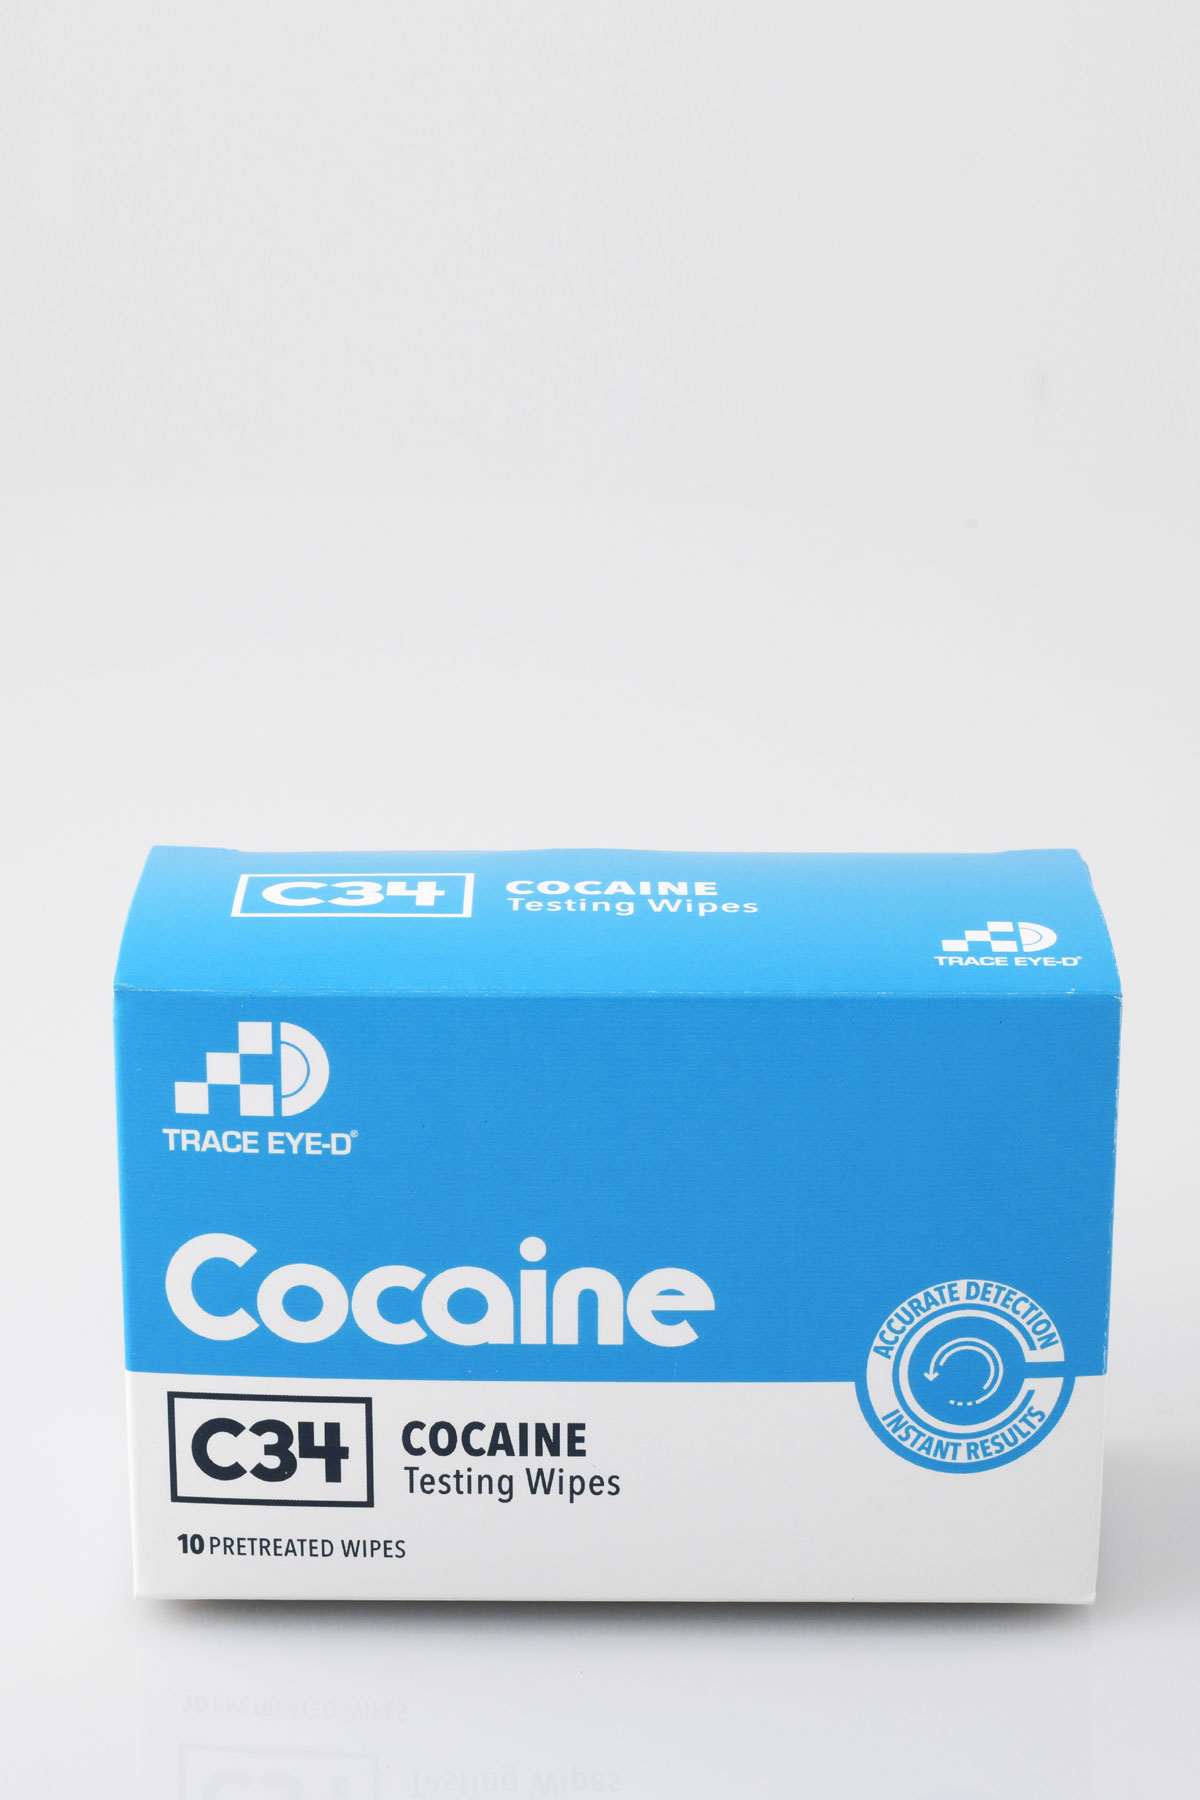 Cocaine_wipe_front